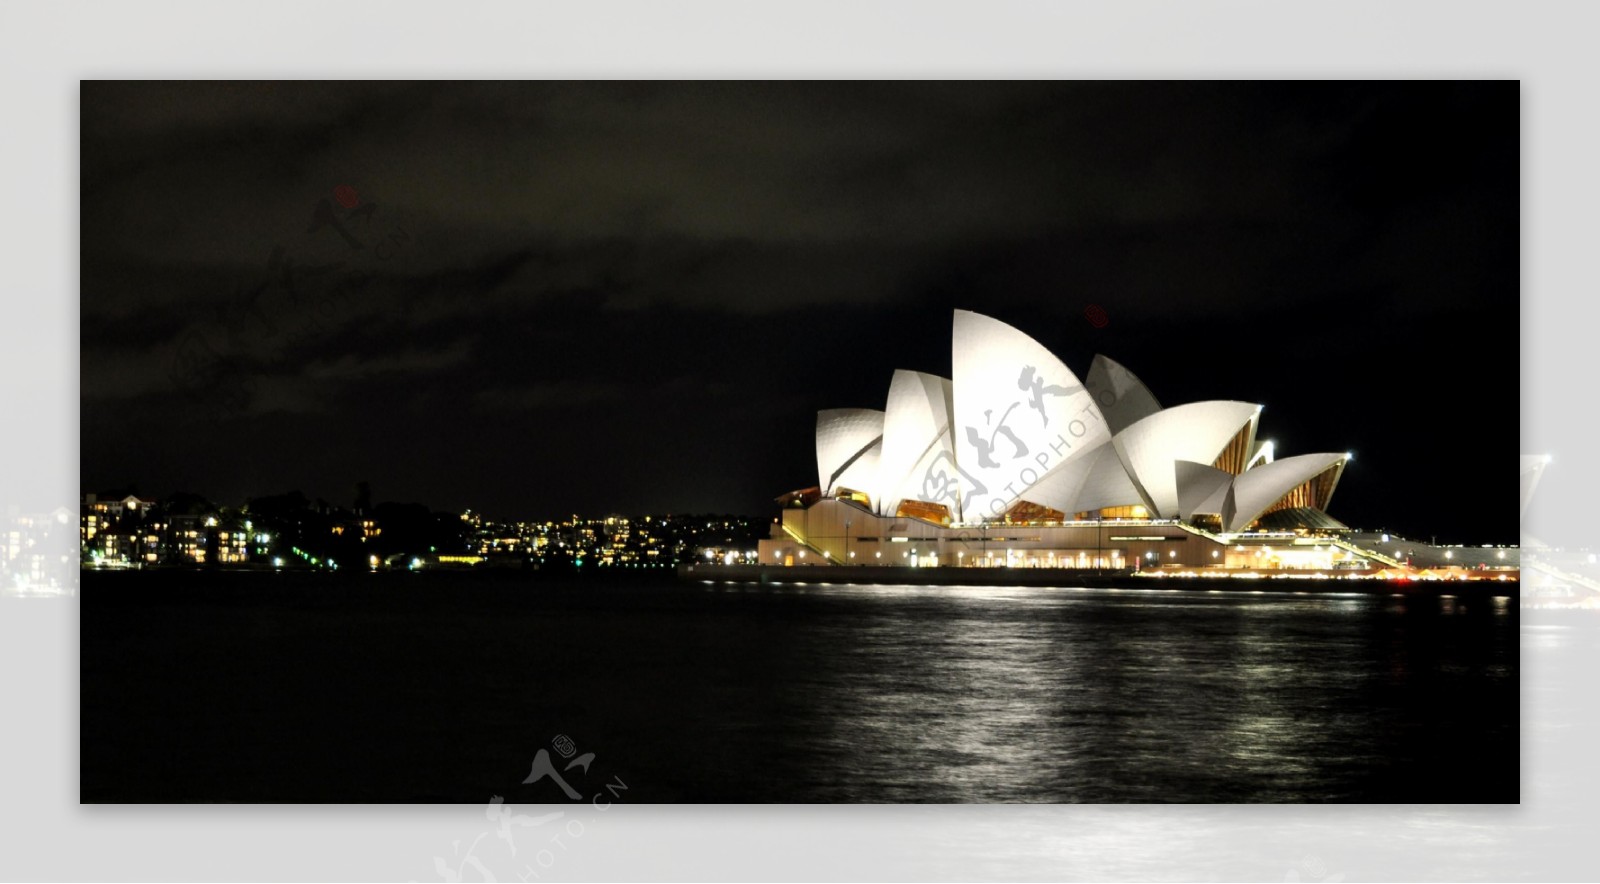 澳大利亚悉尼歌剧院夜景图片